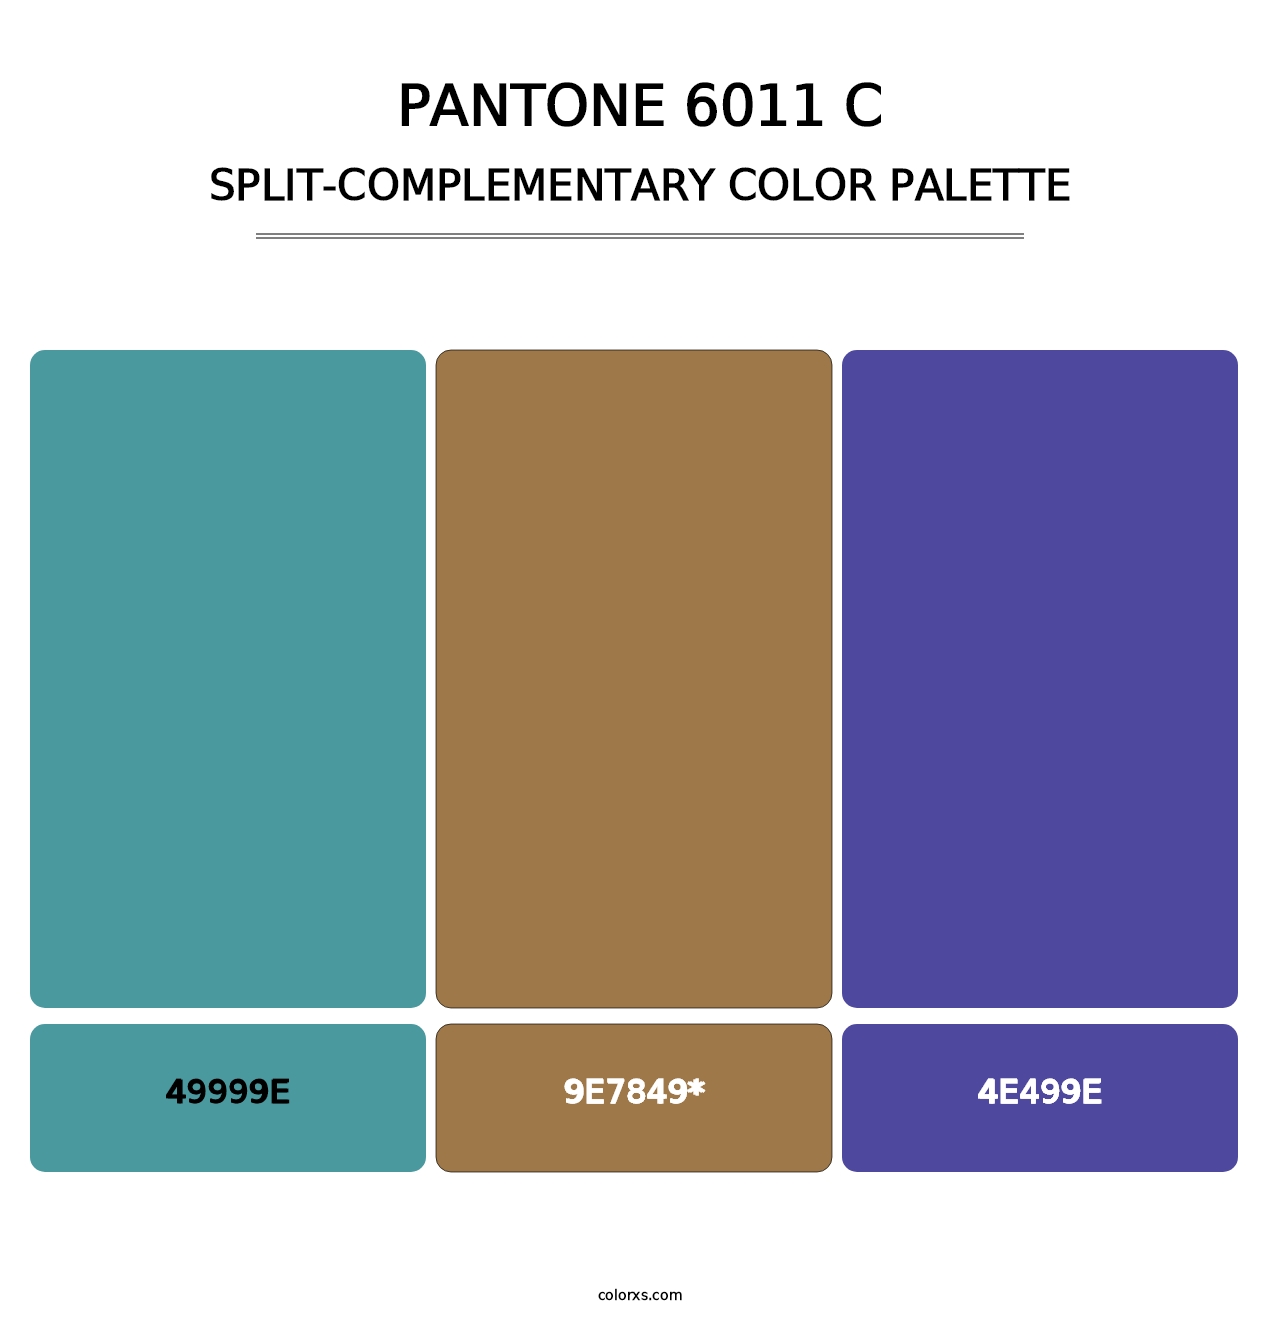 PANTONE 6011 C - Split-Complementary Color Palette